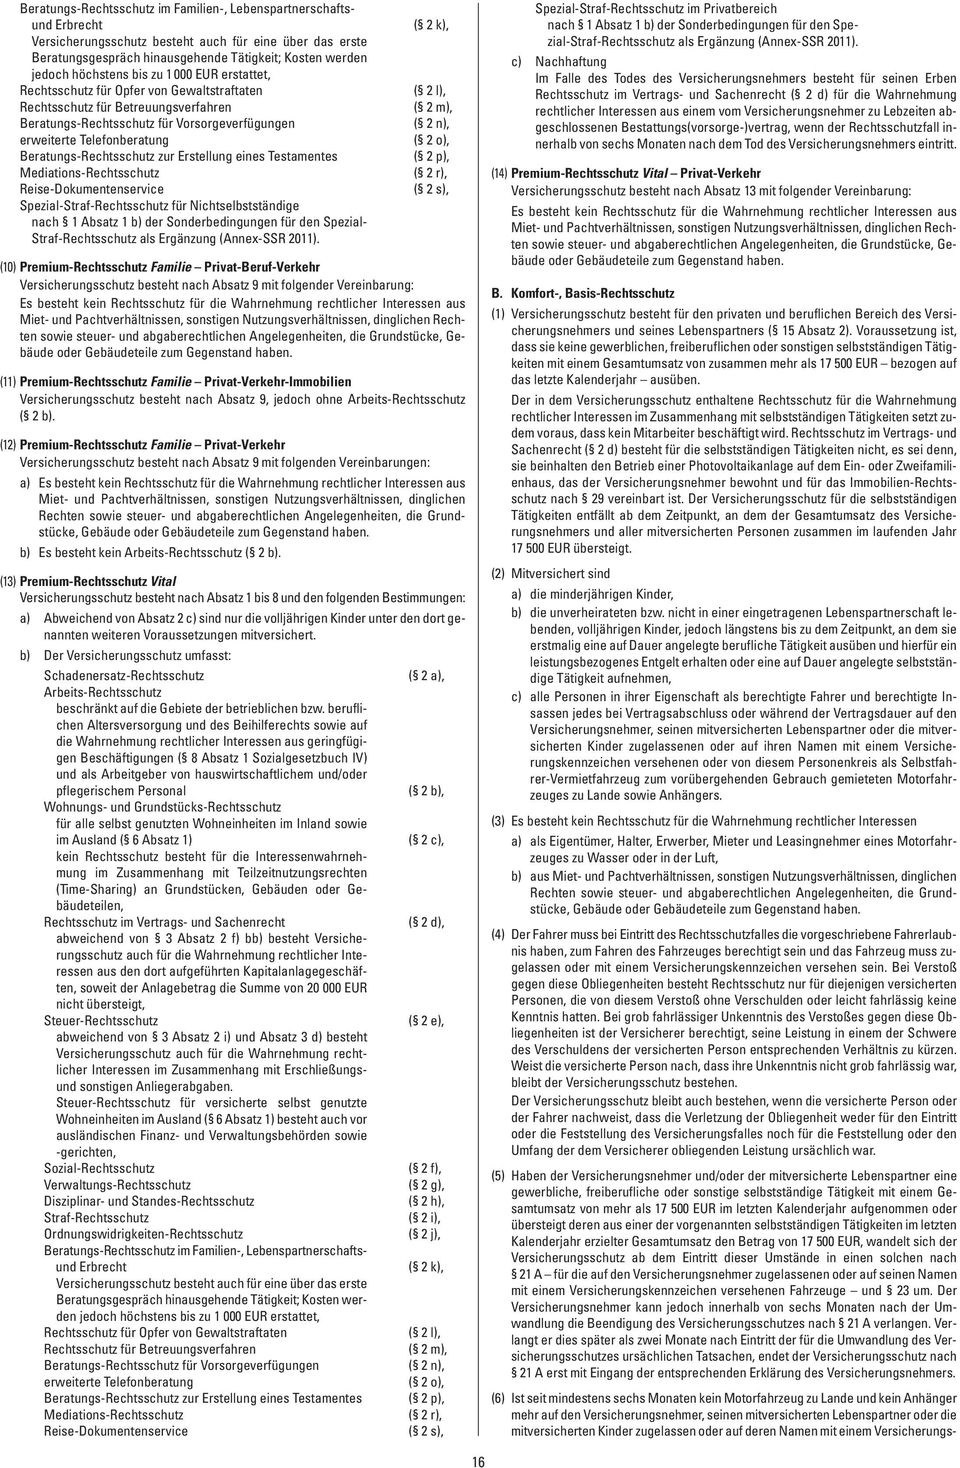 Reise-Dokumentenservice Spezial- für Nichtselbstständige nach 1 Absatz 1 b) der Sonderbedingungen für den Spezial- als Ergänzung (Annex-SSR 2011).